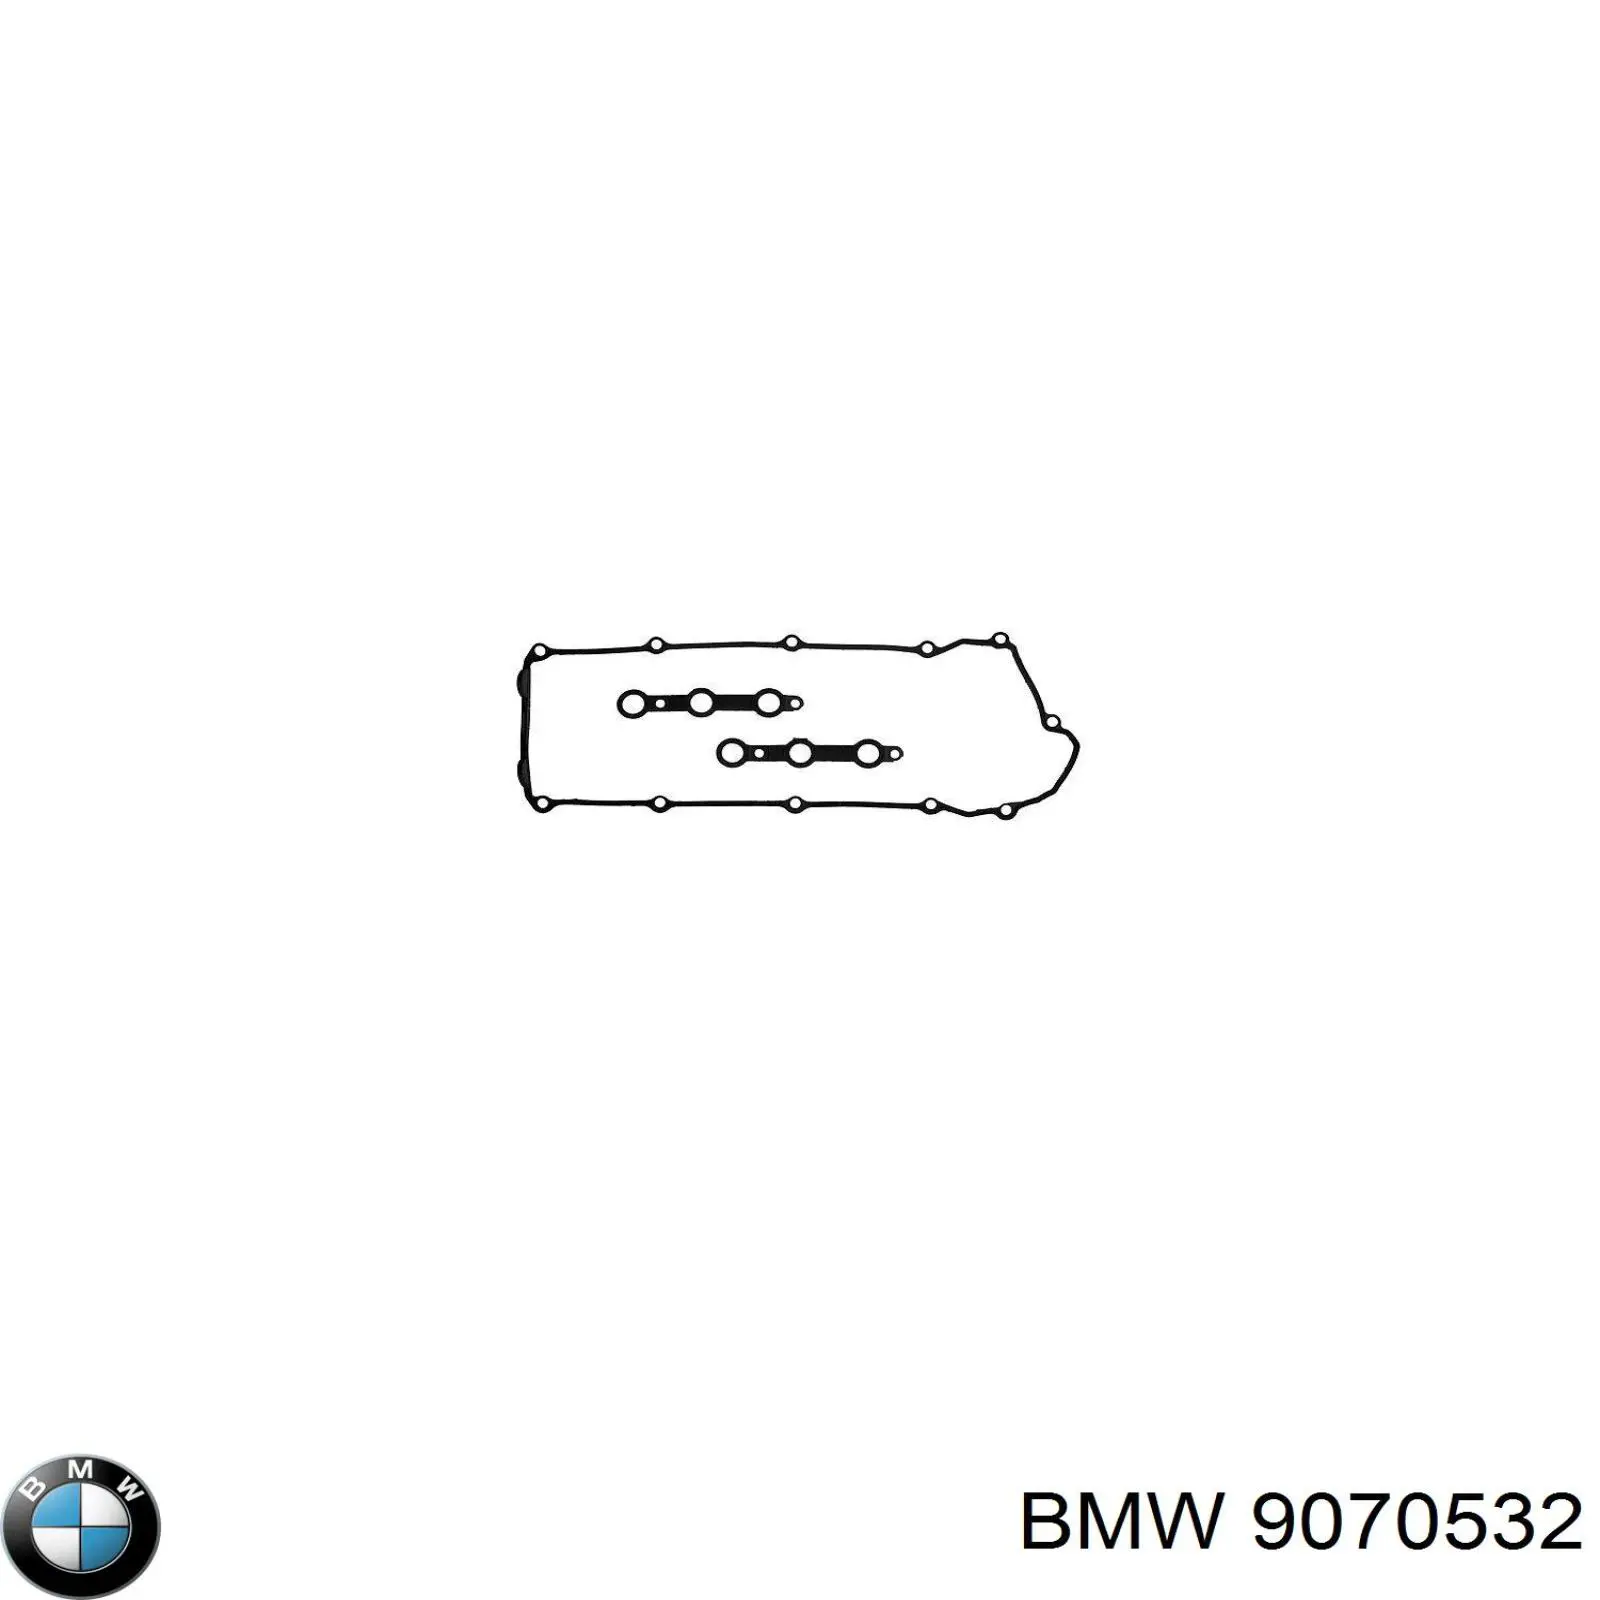 9070532 BMW juego de juntas, tapa de culata de cilindro, anillo de junta